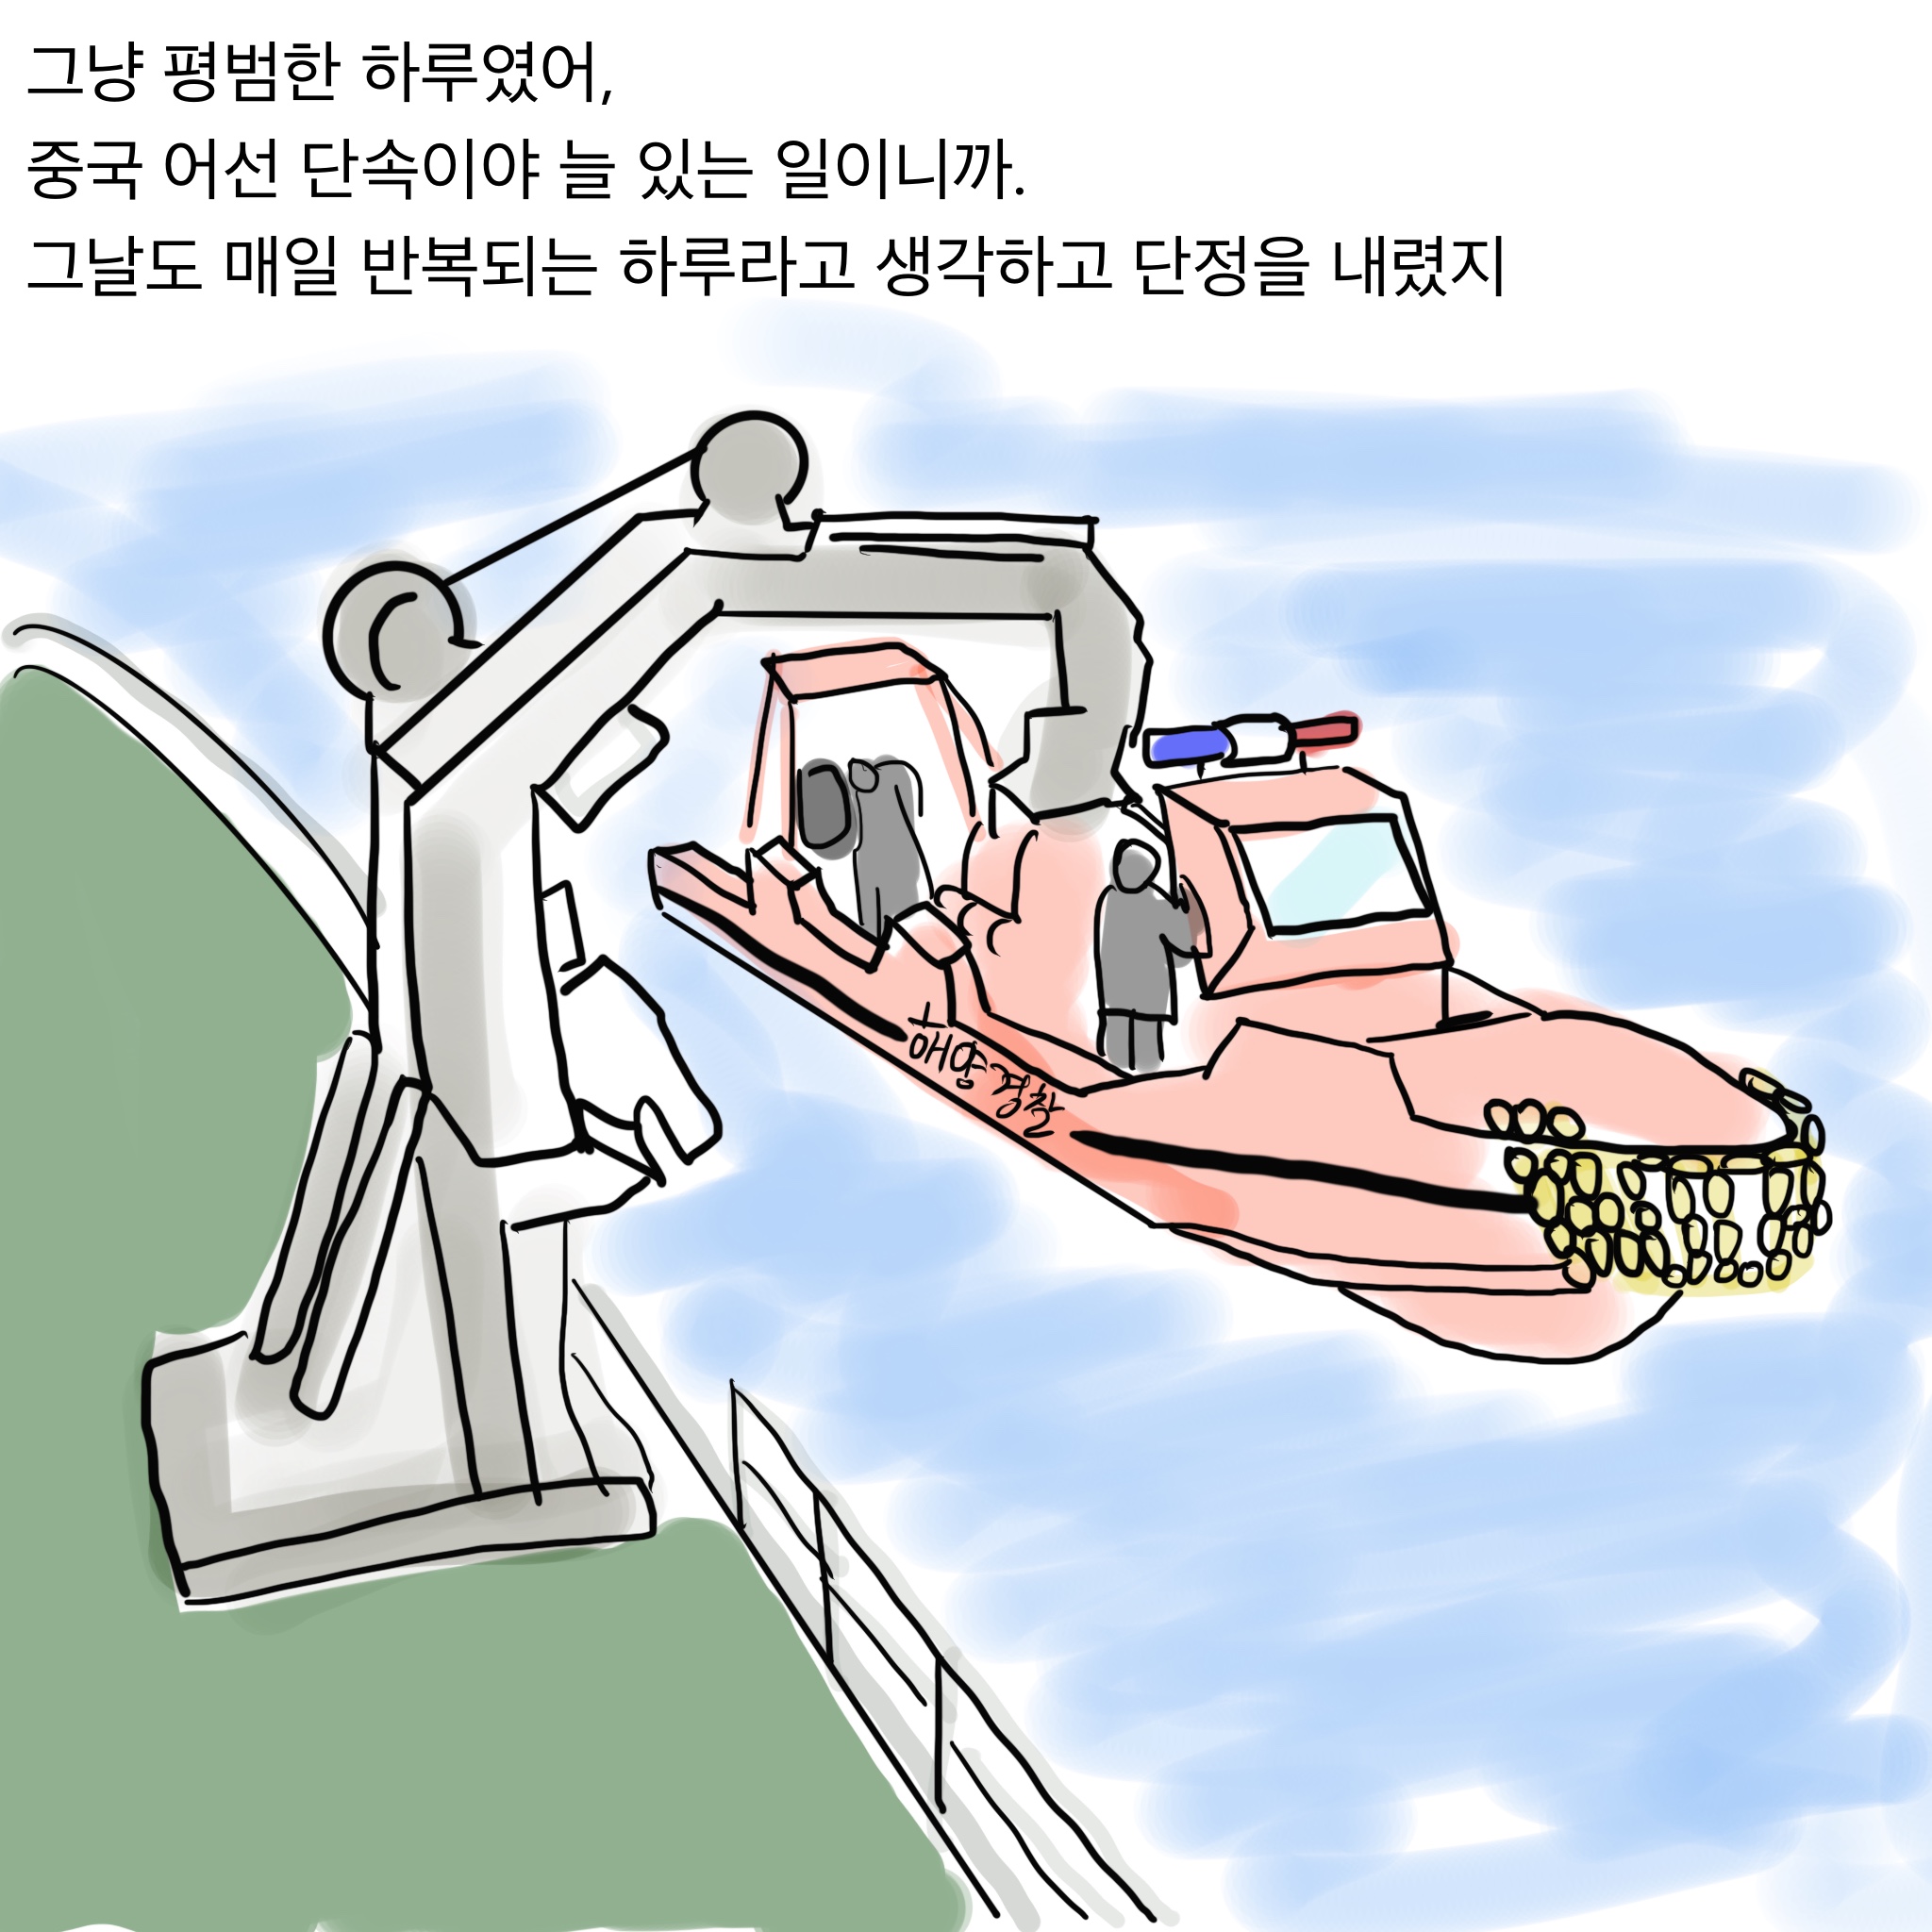 실제일어난 중국 불법 어선 단속 실화 만화.jpg